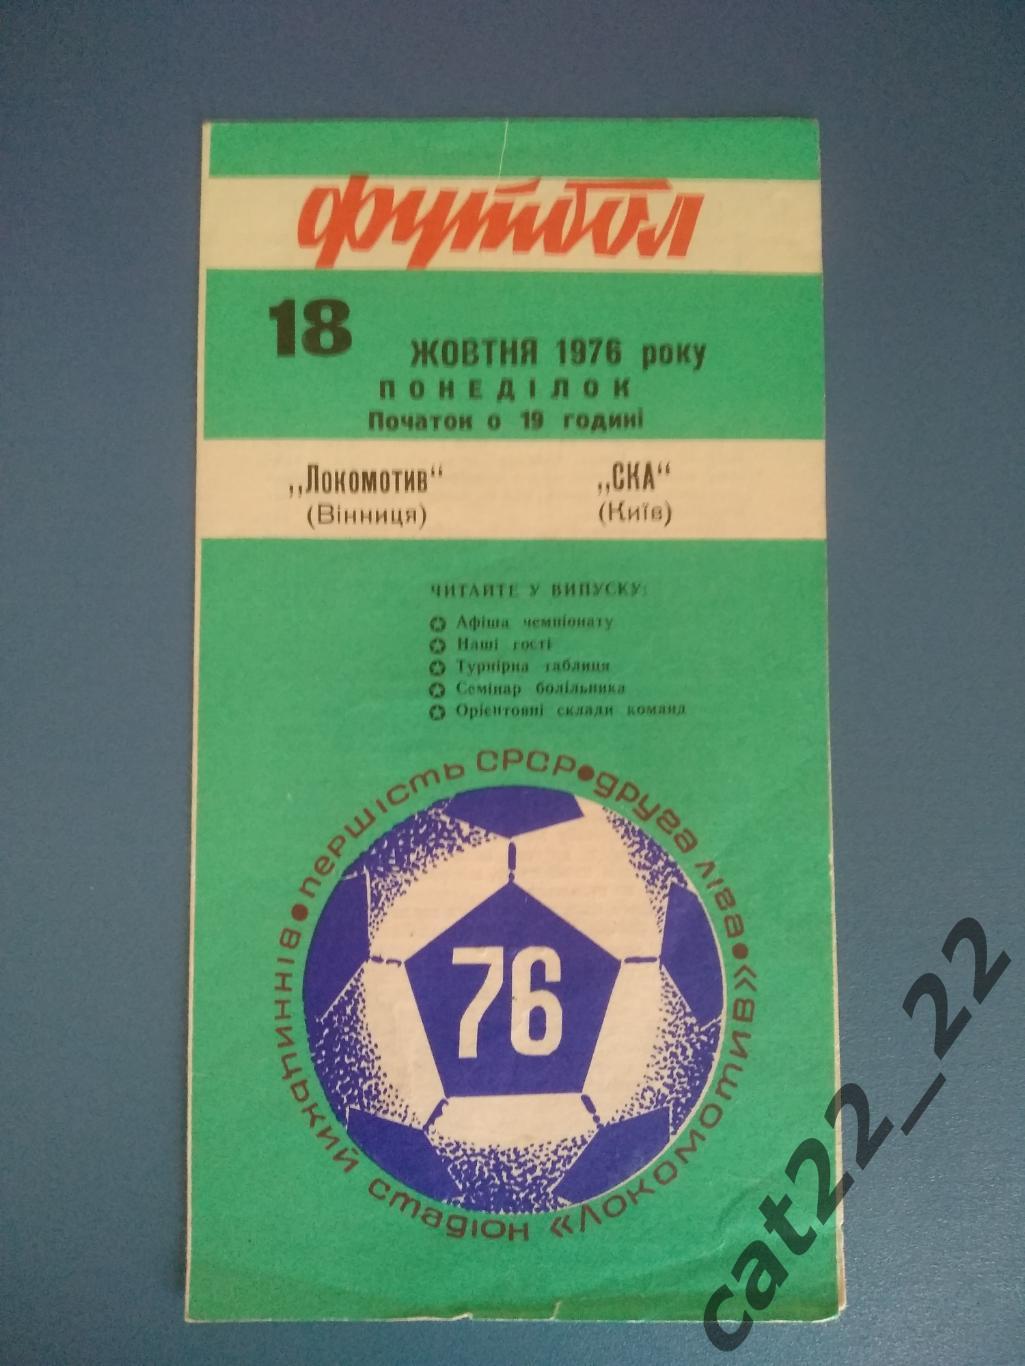 Локомотив Винница - СКА Киев 1976